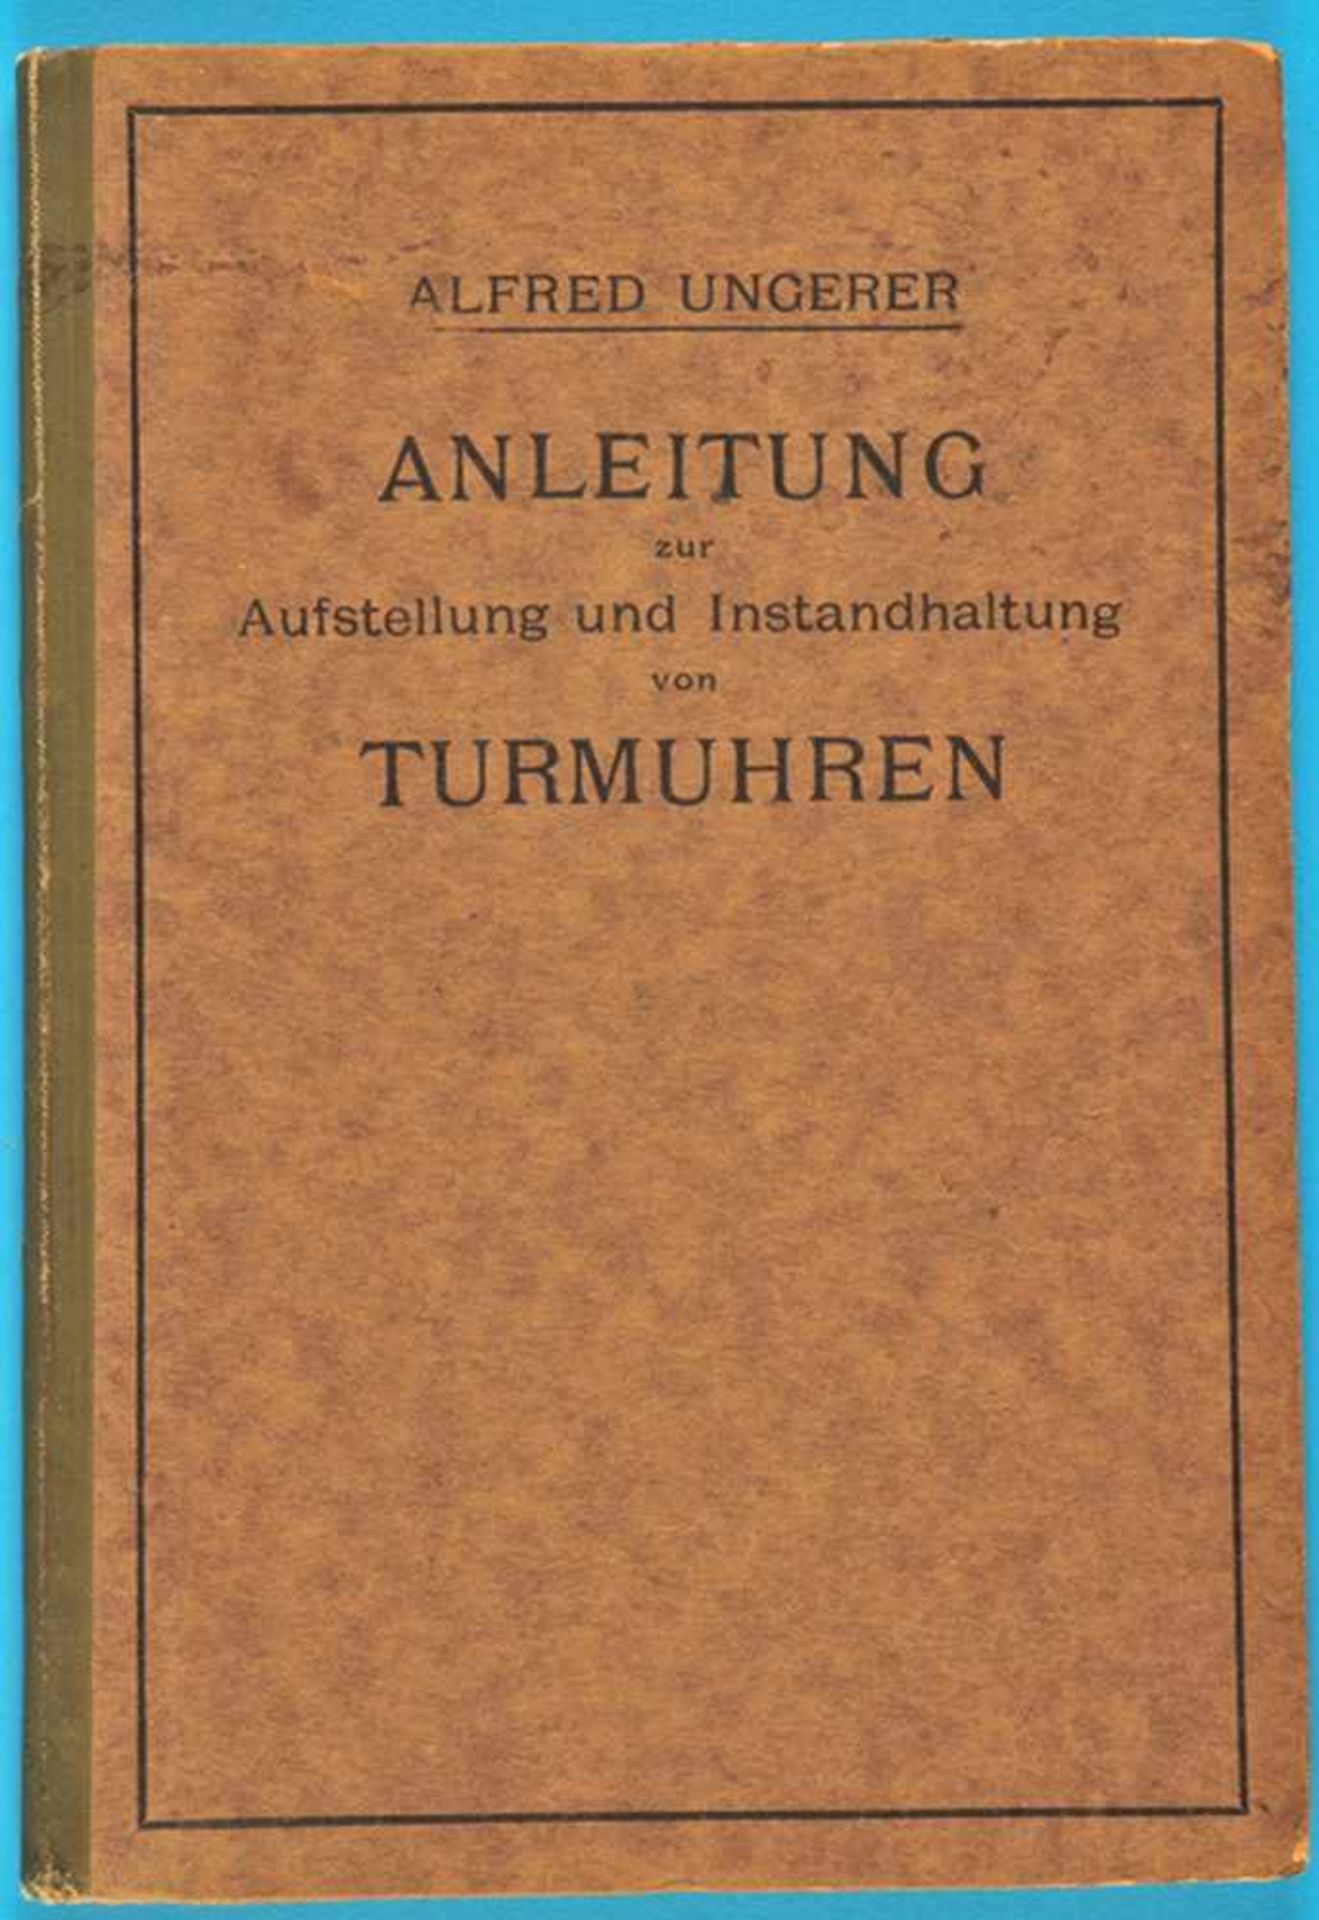 Alfred Ungerer, Anleitung zur Aufstellung und Instandhaltung von Turmuhren, 1920Alfred Ungerer,